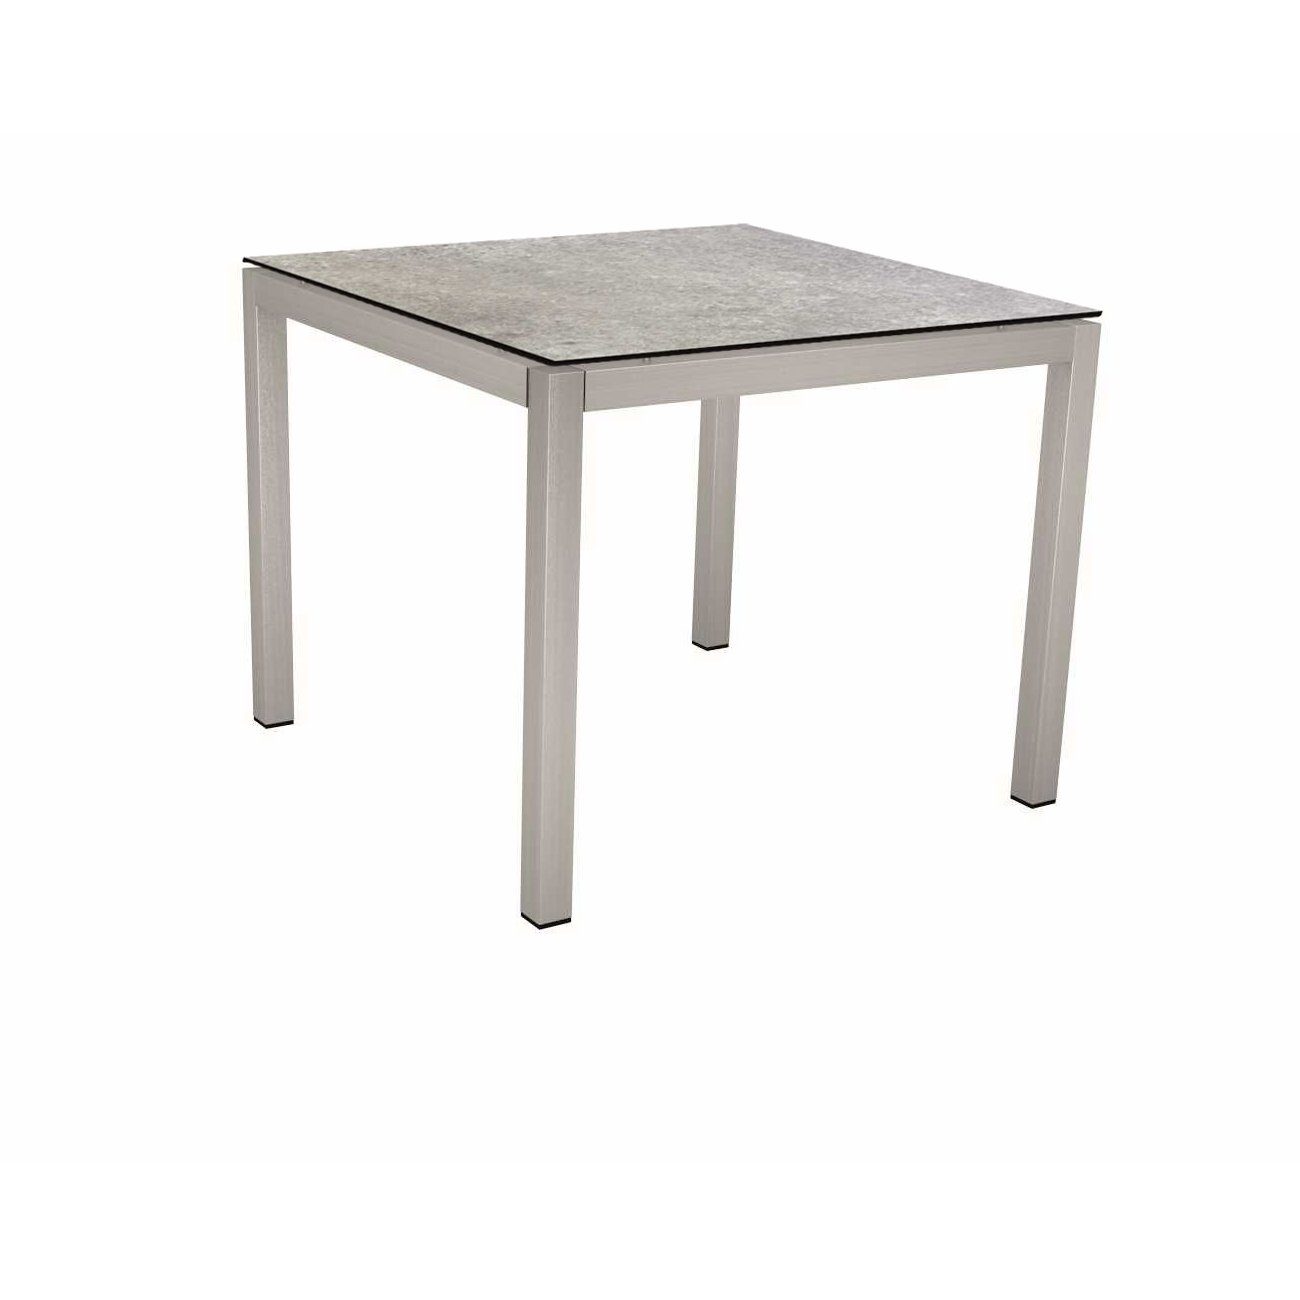 Stern Tischsystem, Gestell Edelstahl Vierkantrohr, Tischplatte HPL Vintage stone, 90x90 cm